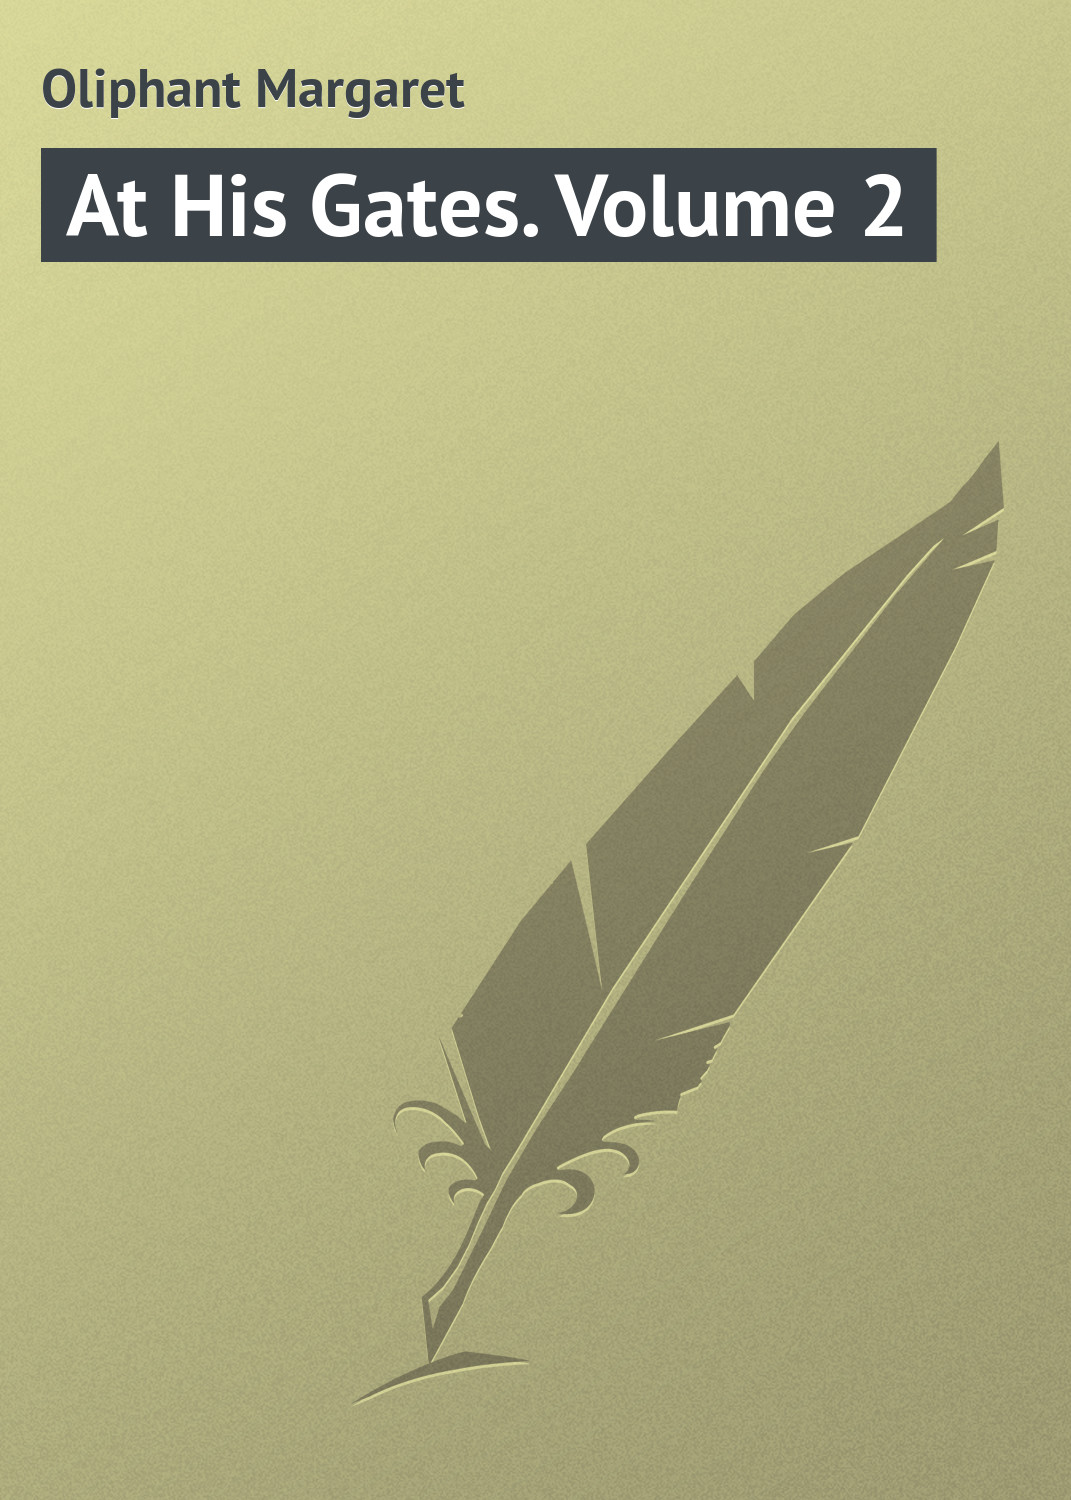 Книга At His Gates. Volume 2 из серии , созданная Margaret Oliphant, может относится к жанру Зарубежная классика. Стоимость электронной книги At His Gates. Volume 2 с идентификатором 23164715 составляет 5.99 руб.